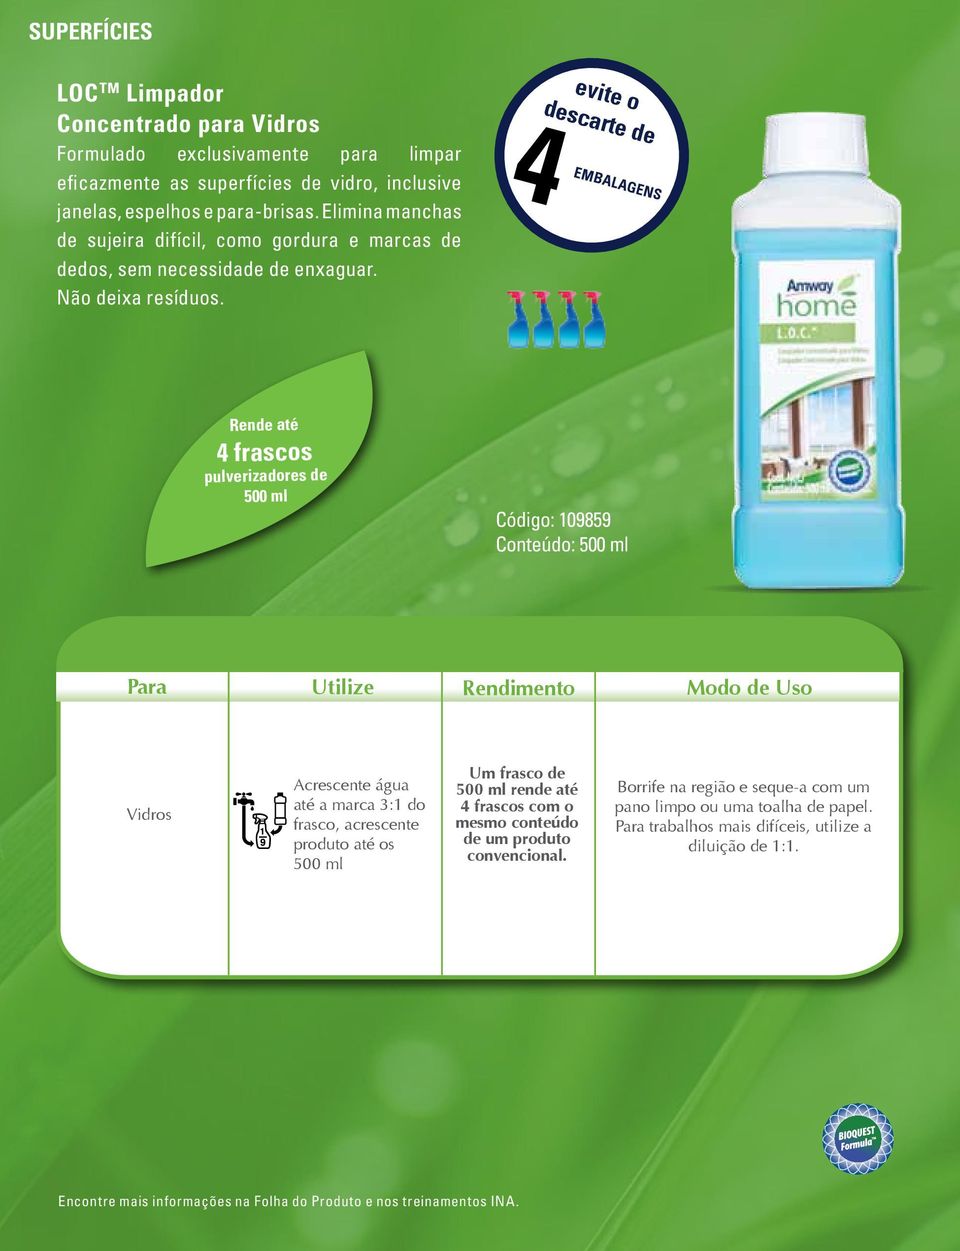 evite o descarte de 4 embalagens Rende até 4 frascos pulverizadores de 500 ml Código: 109859 Conteúdo: 500 ml Para Utilize Rendimento Modo de Uso Vidros Acrescente água até a marca